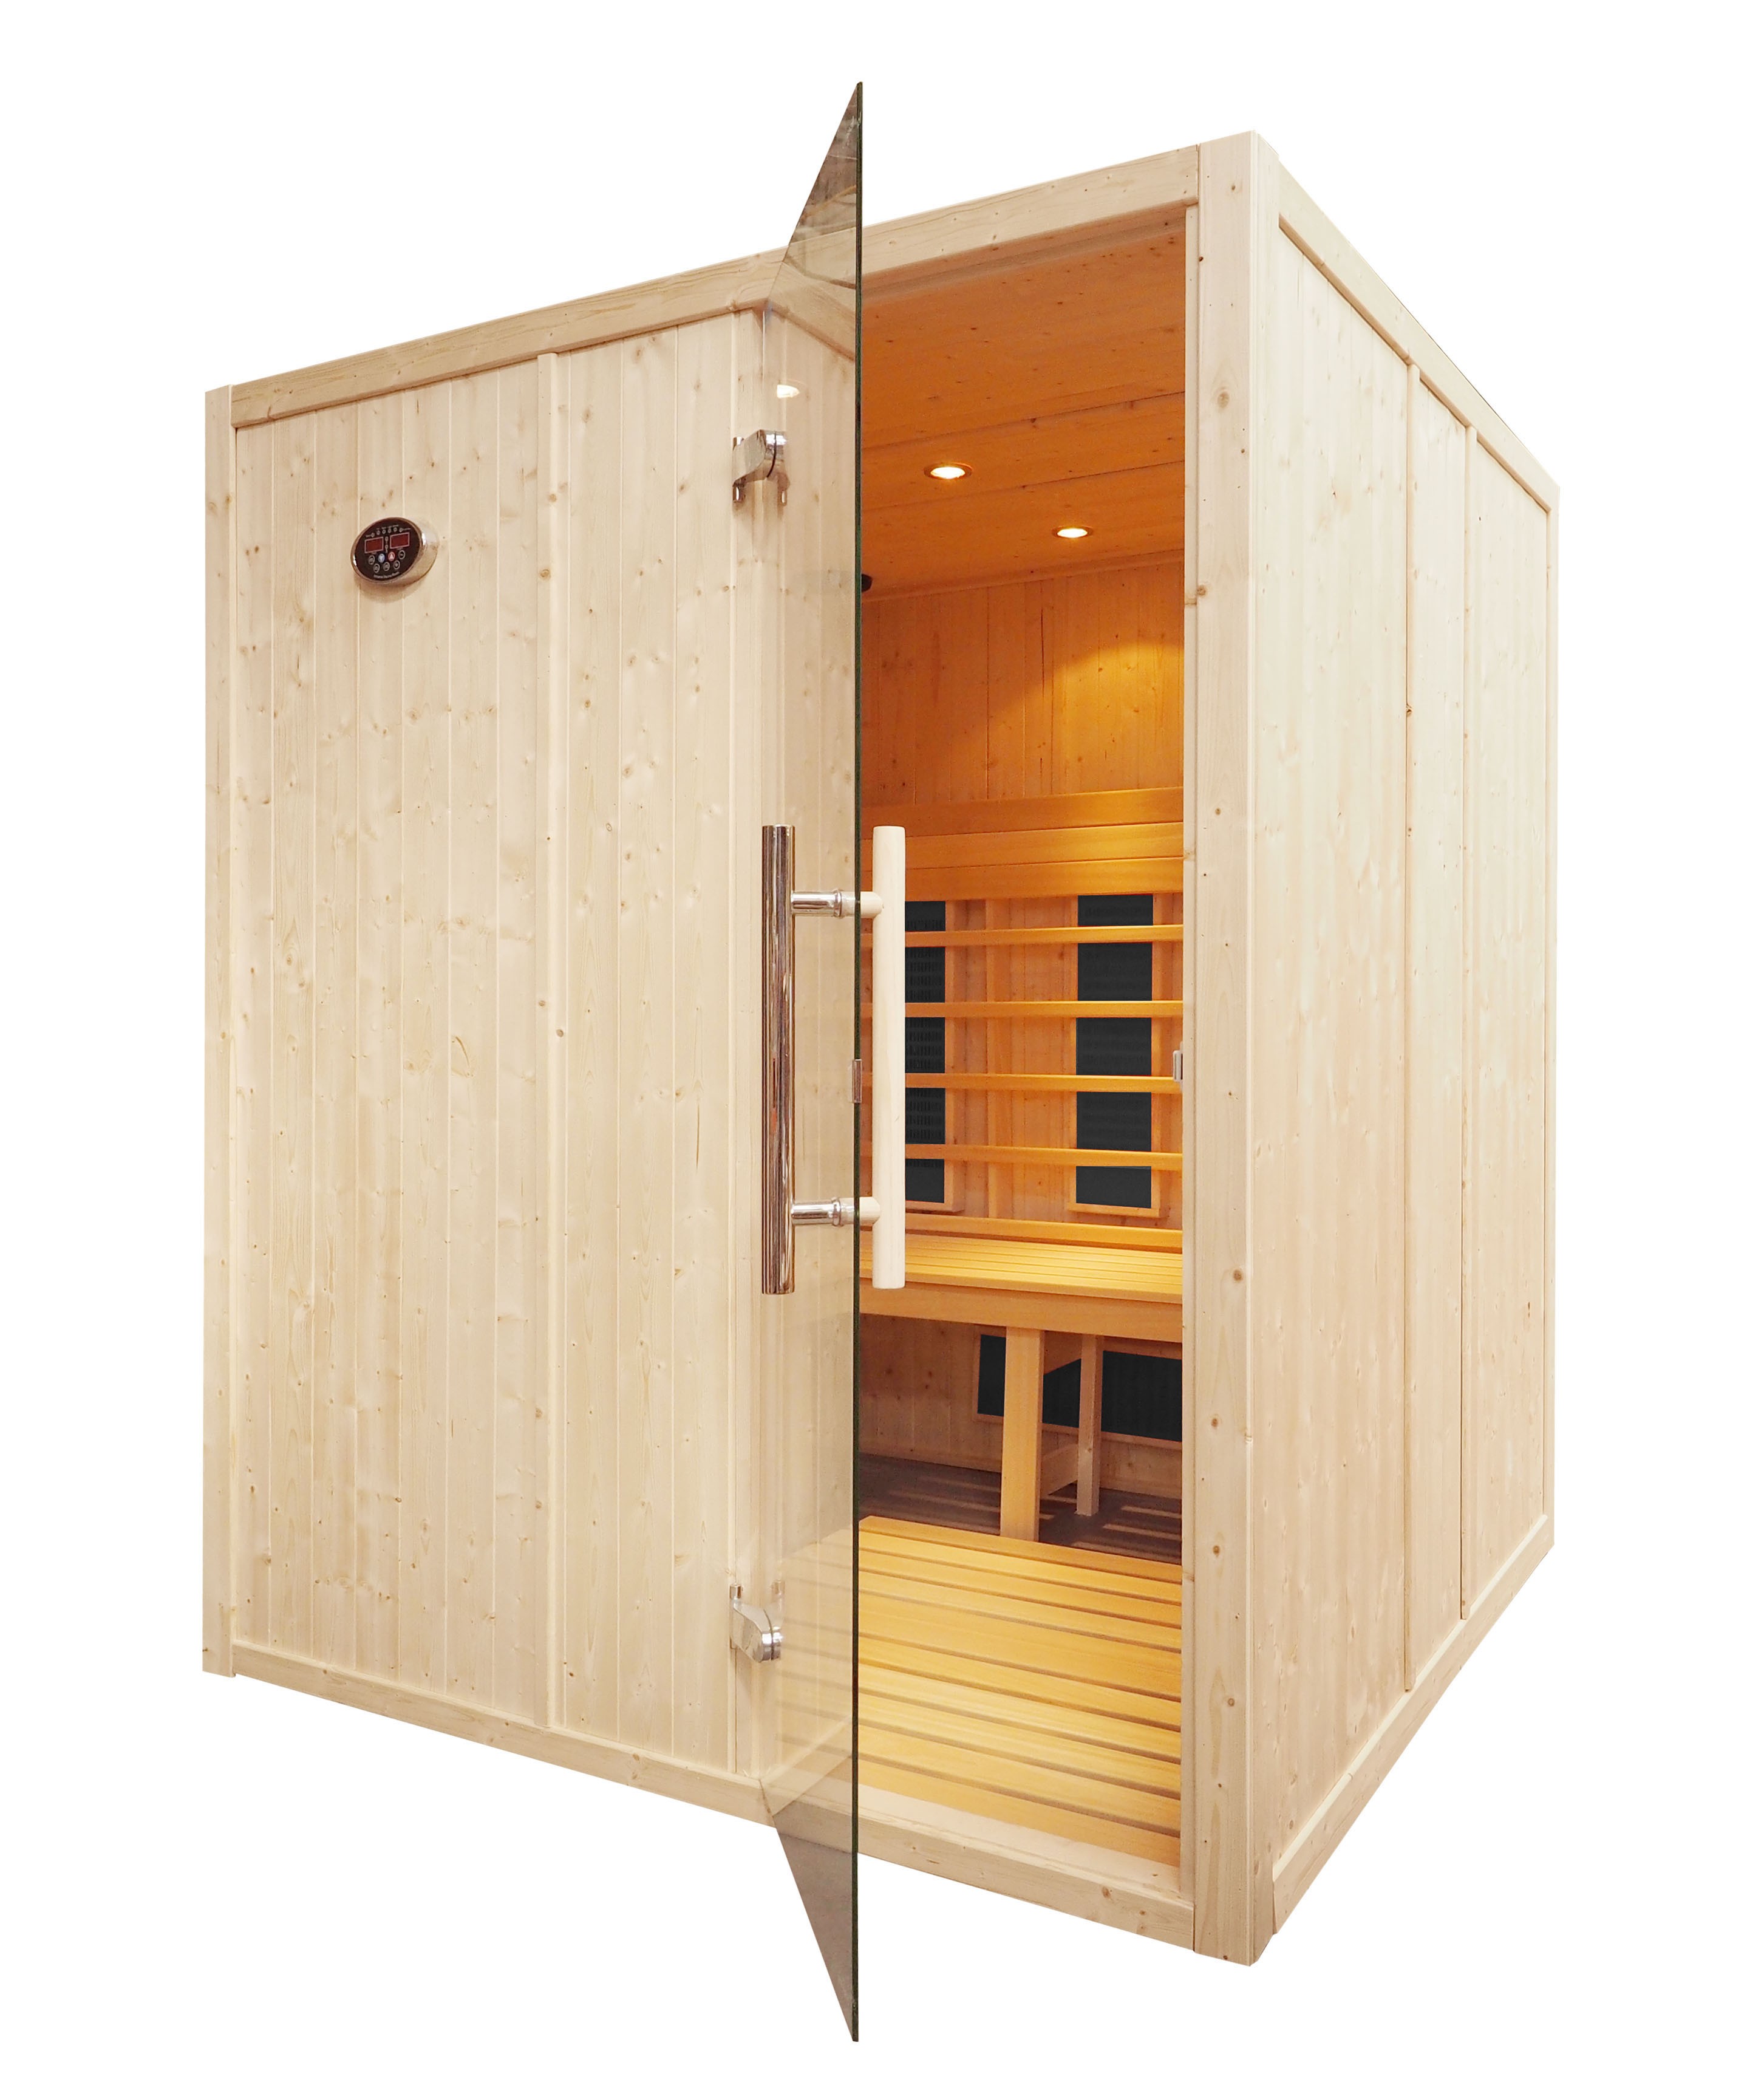 Cabina sauna de infravermelhos para 4 pessoas - IR2525L com bancos L